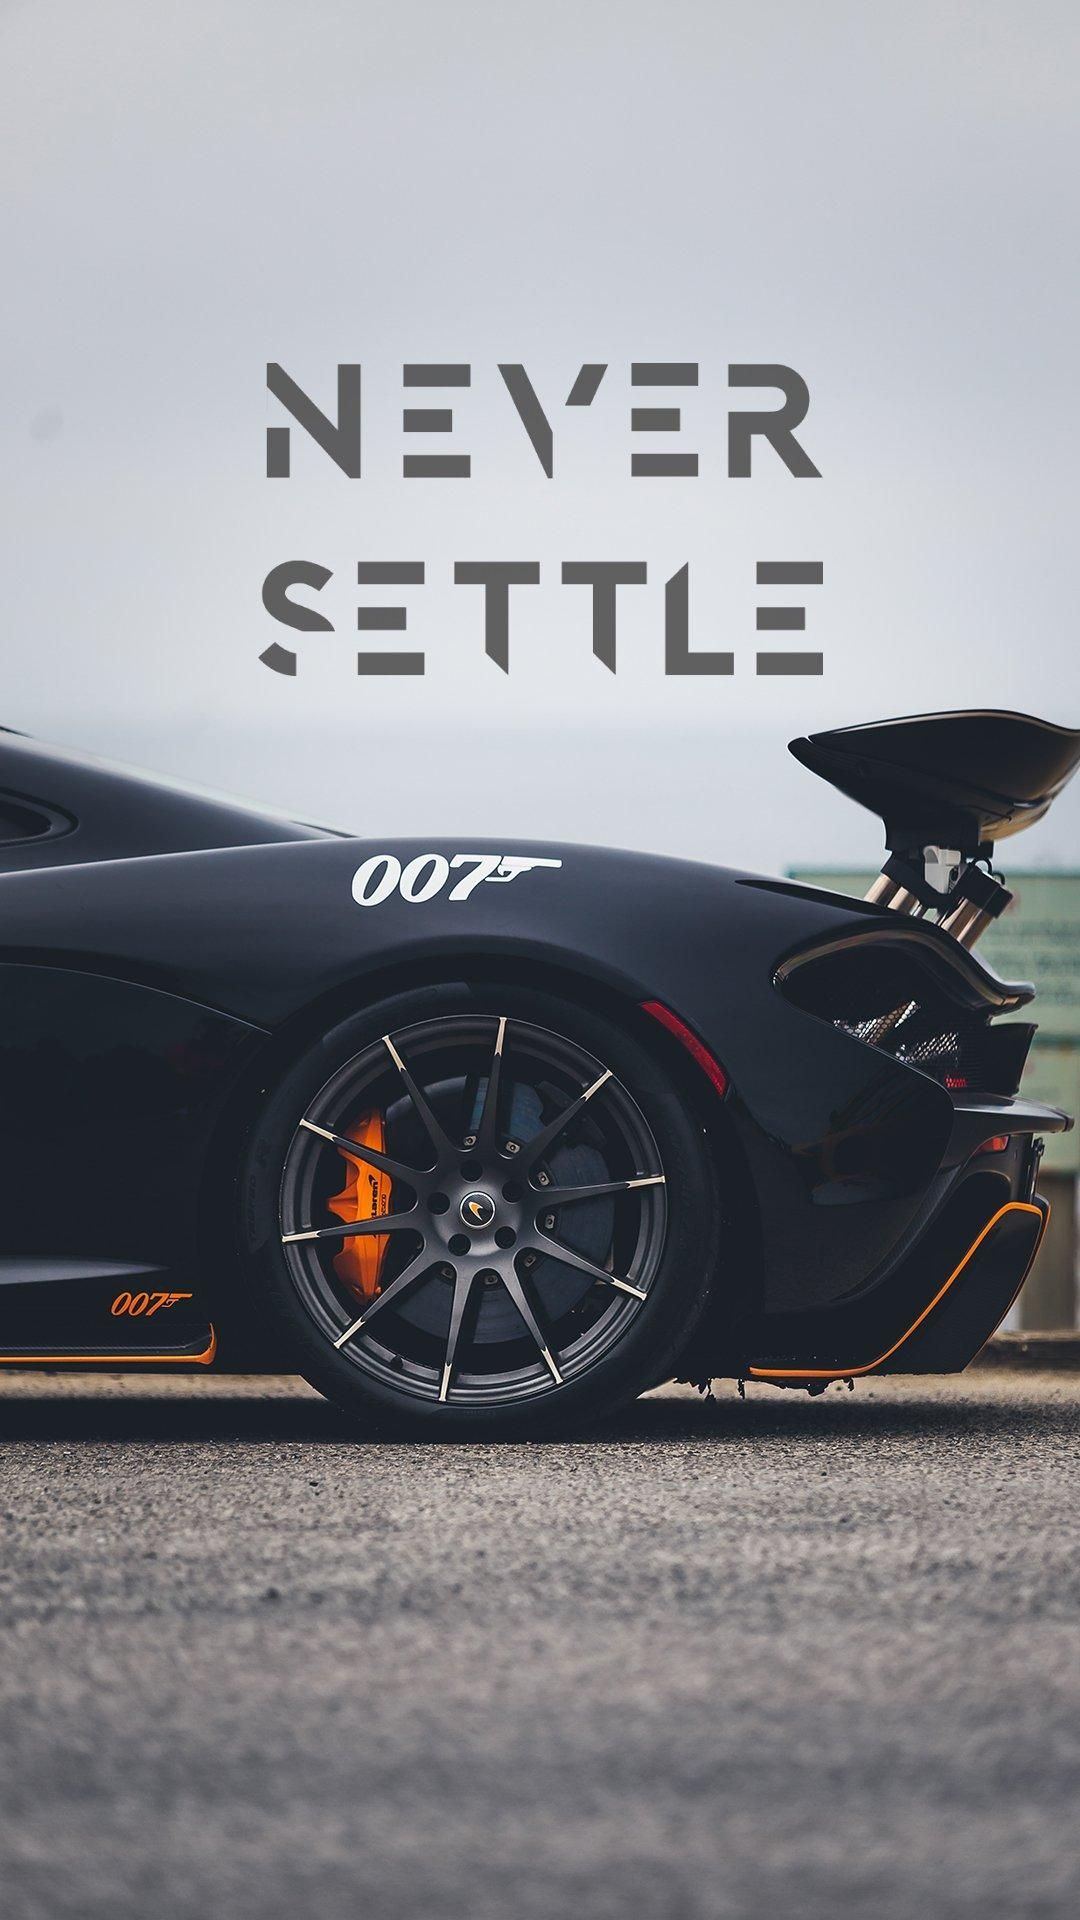 Never Settle. Car wallpaper, Sports car wallpaper, Never settle